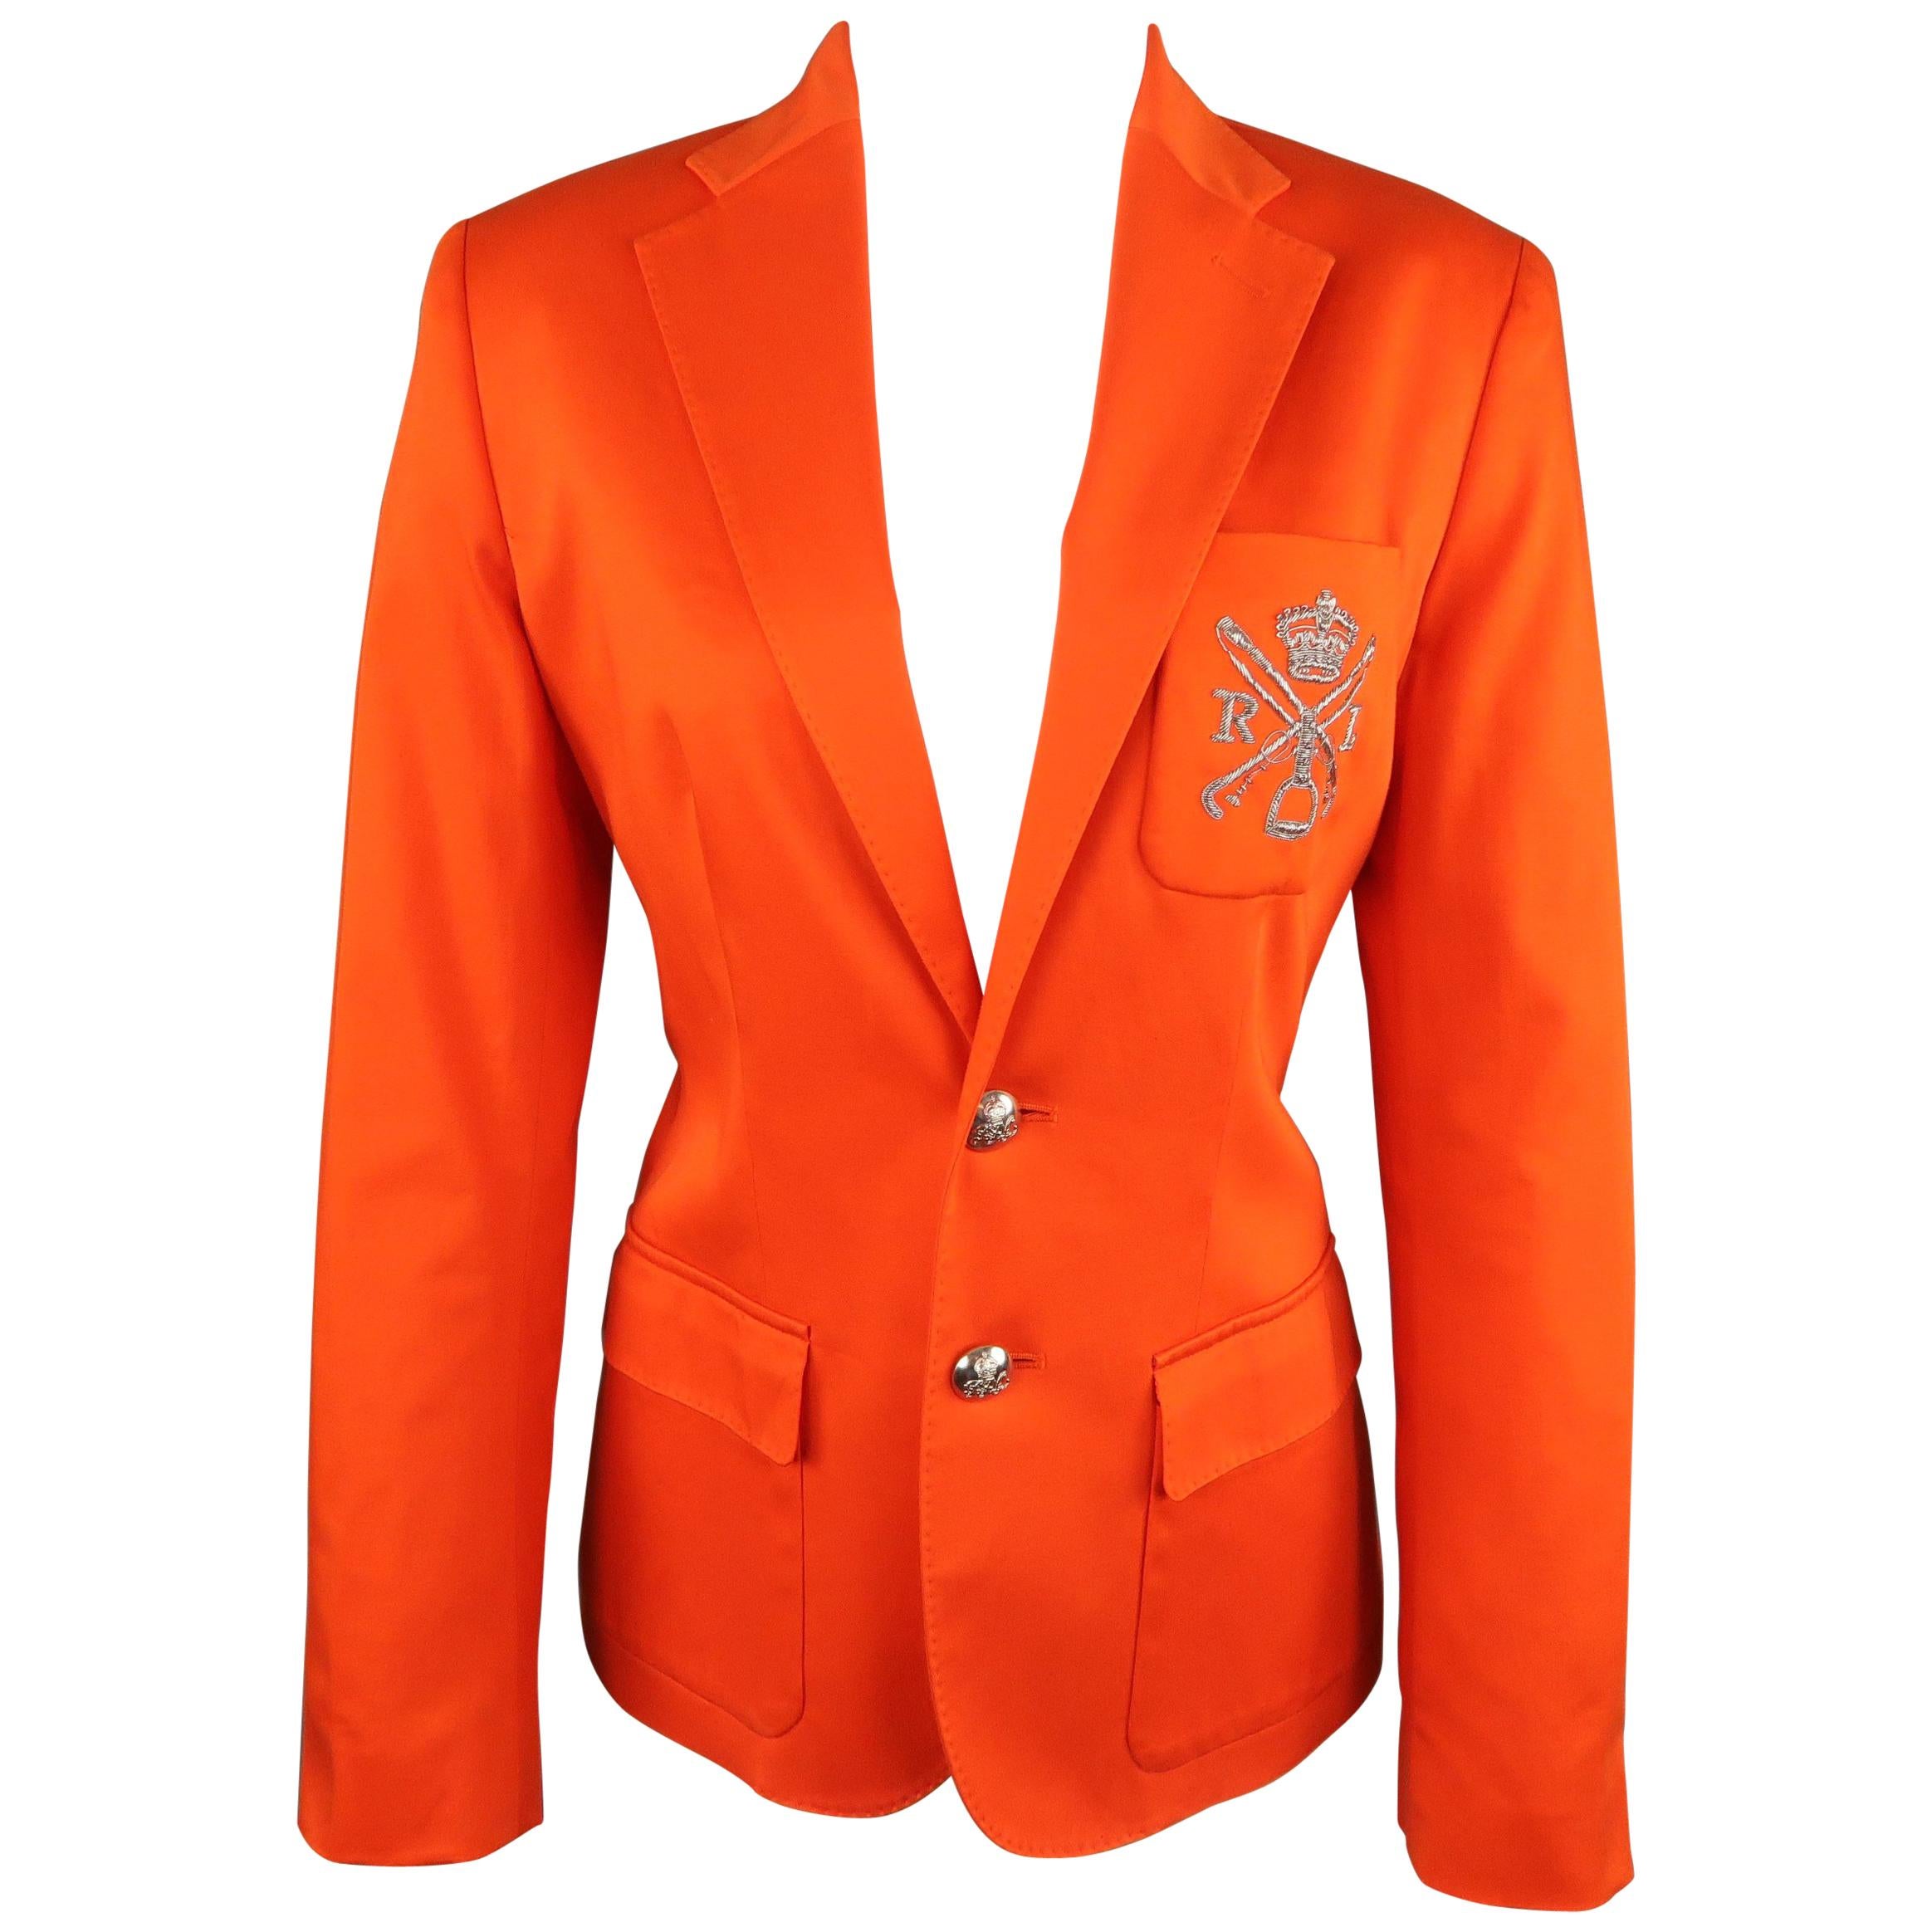 RALPH LAUREN Size 6 Orange Cotton Silver Crest Blazer Jacket